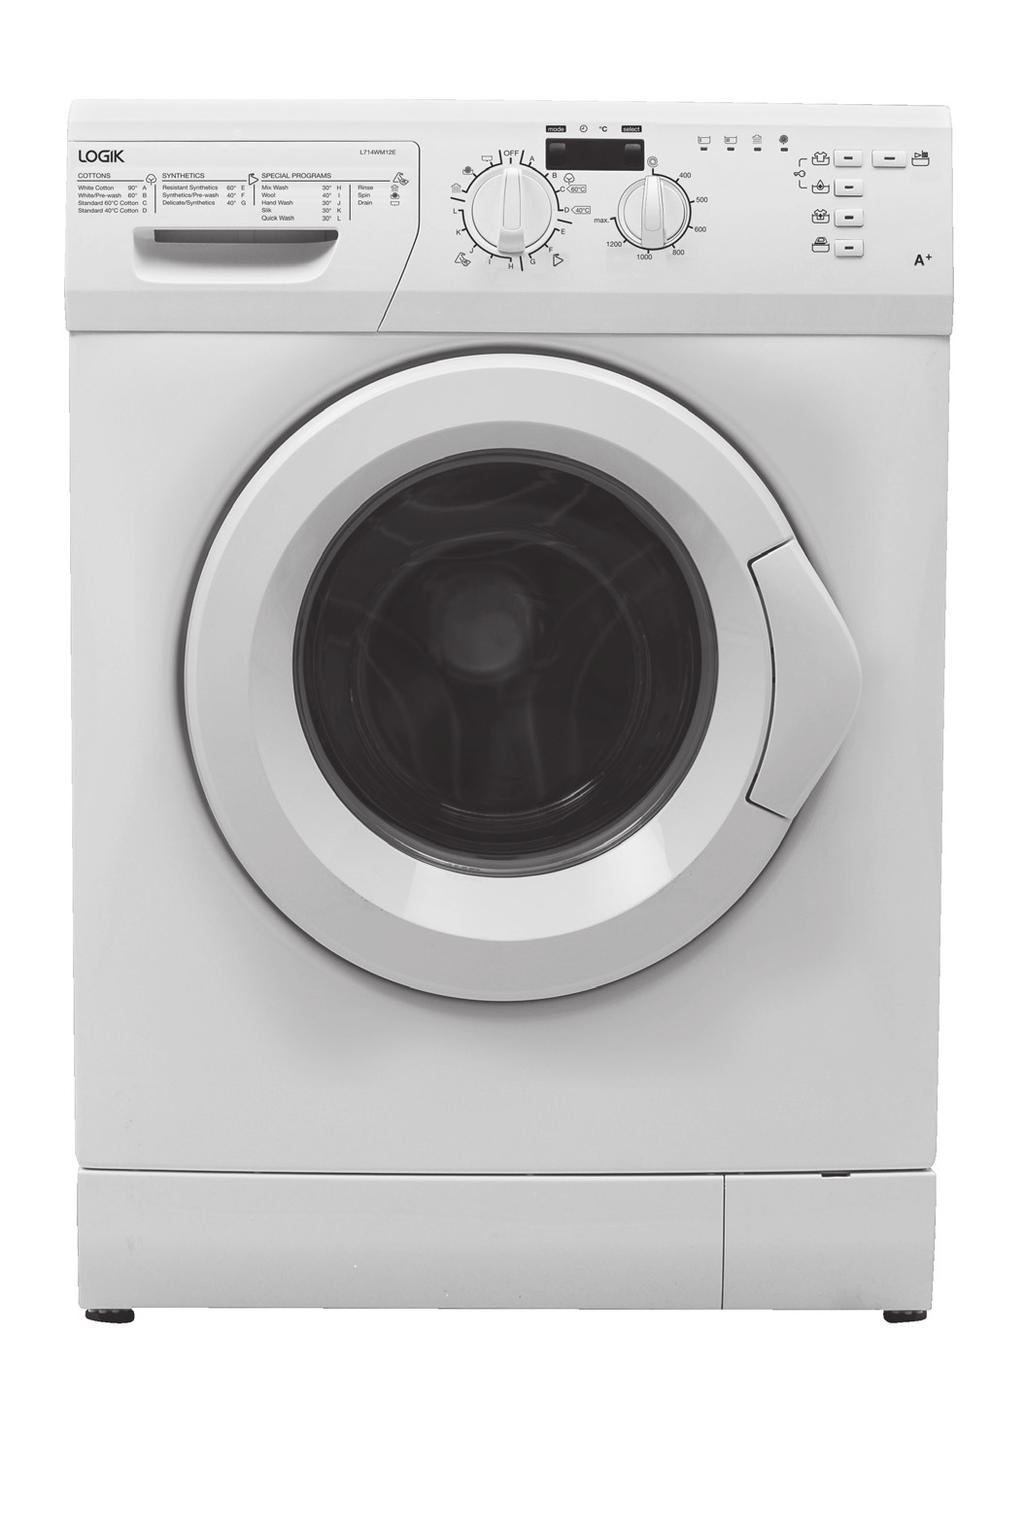 7KG Washing Machine Installation / Instruction Manual L714WM12E 7KG Washing Machine Installation / Instruction Manual Vaskemaskin for 7 kg Installasjons-/brukerveiledning 7 KG tvättmaskin